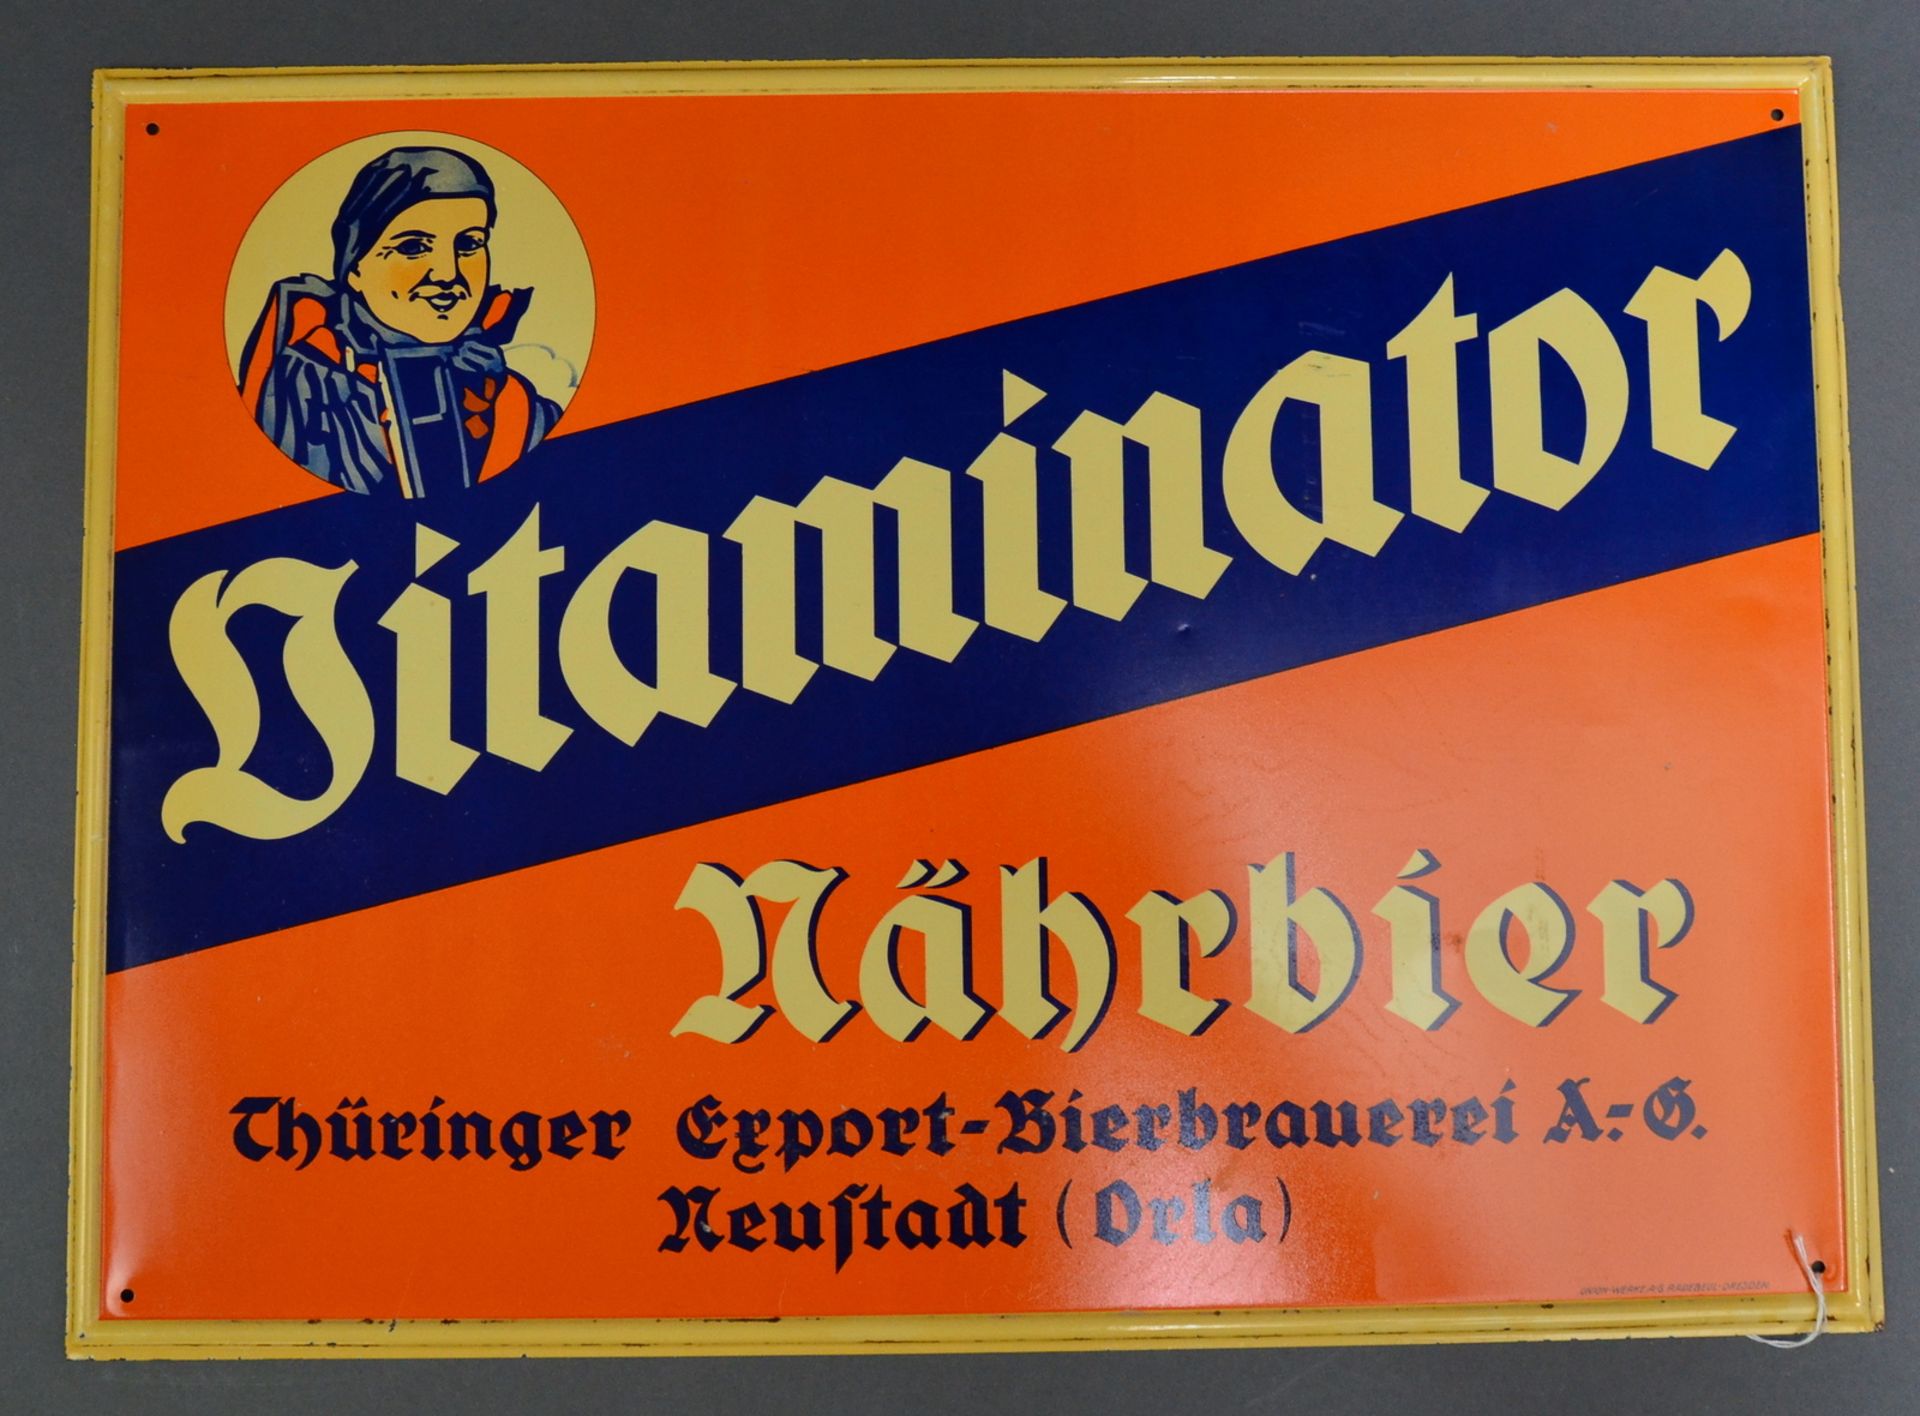 Blechschild "Vitaminator" Export Bierbrauerei/Neustadt (Orla) um 1930